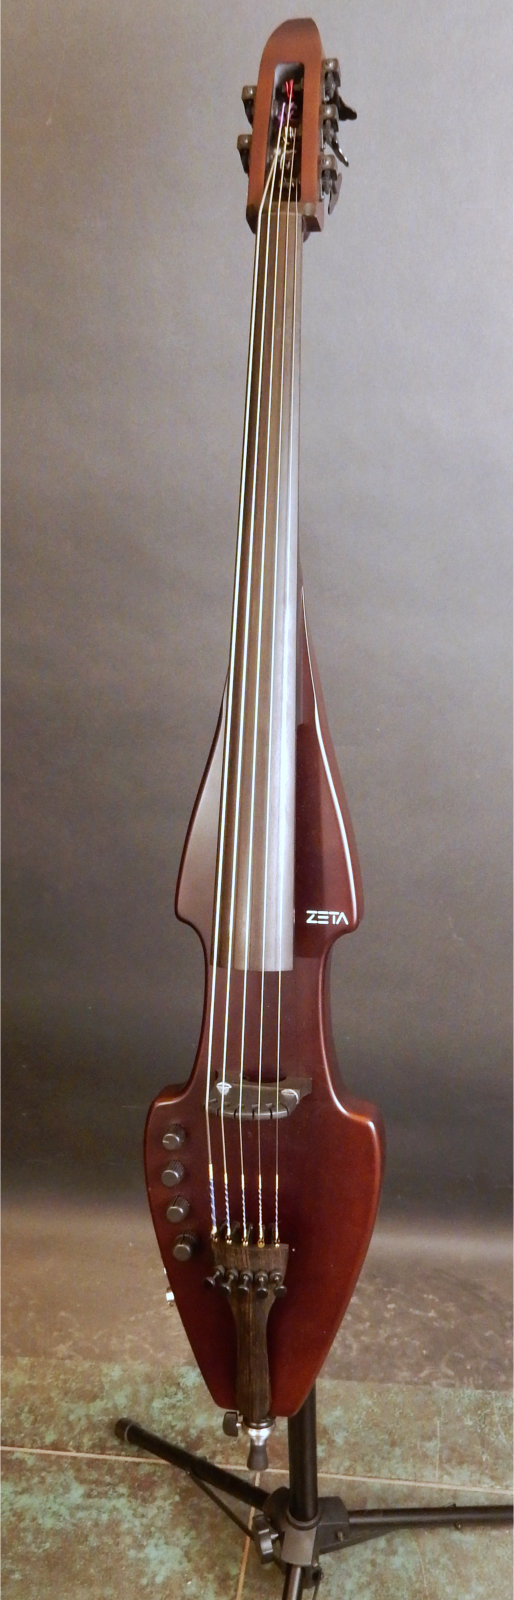 JC Legacy Solid Color   ZETA Violins   Electric Violins Cello